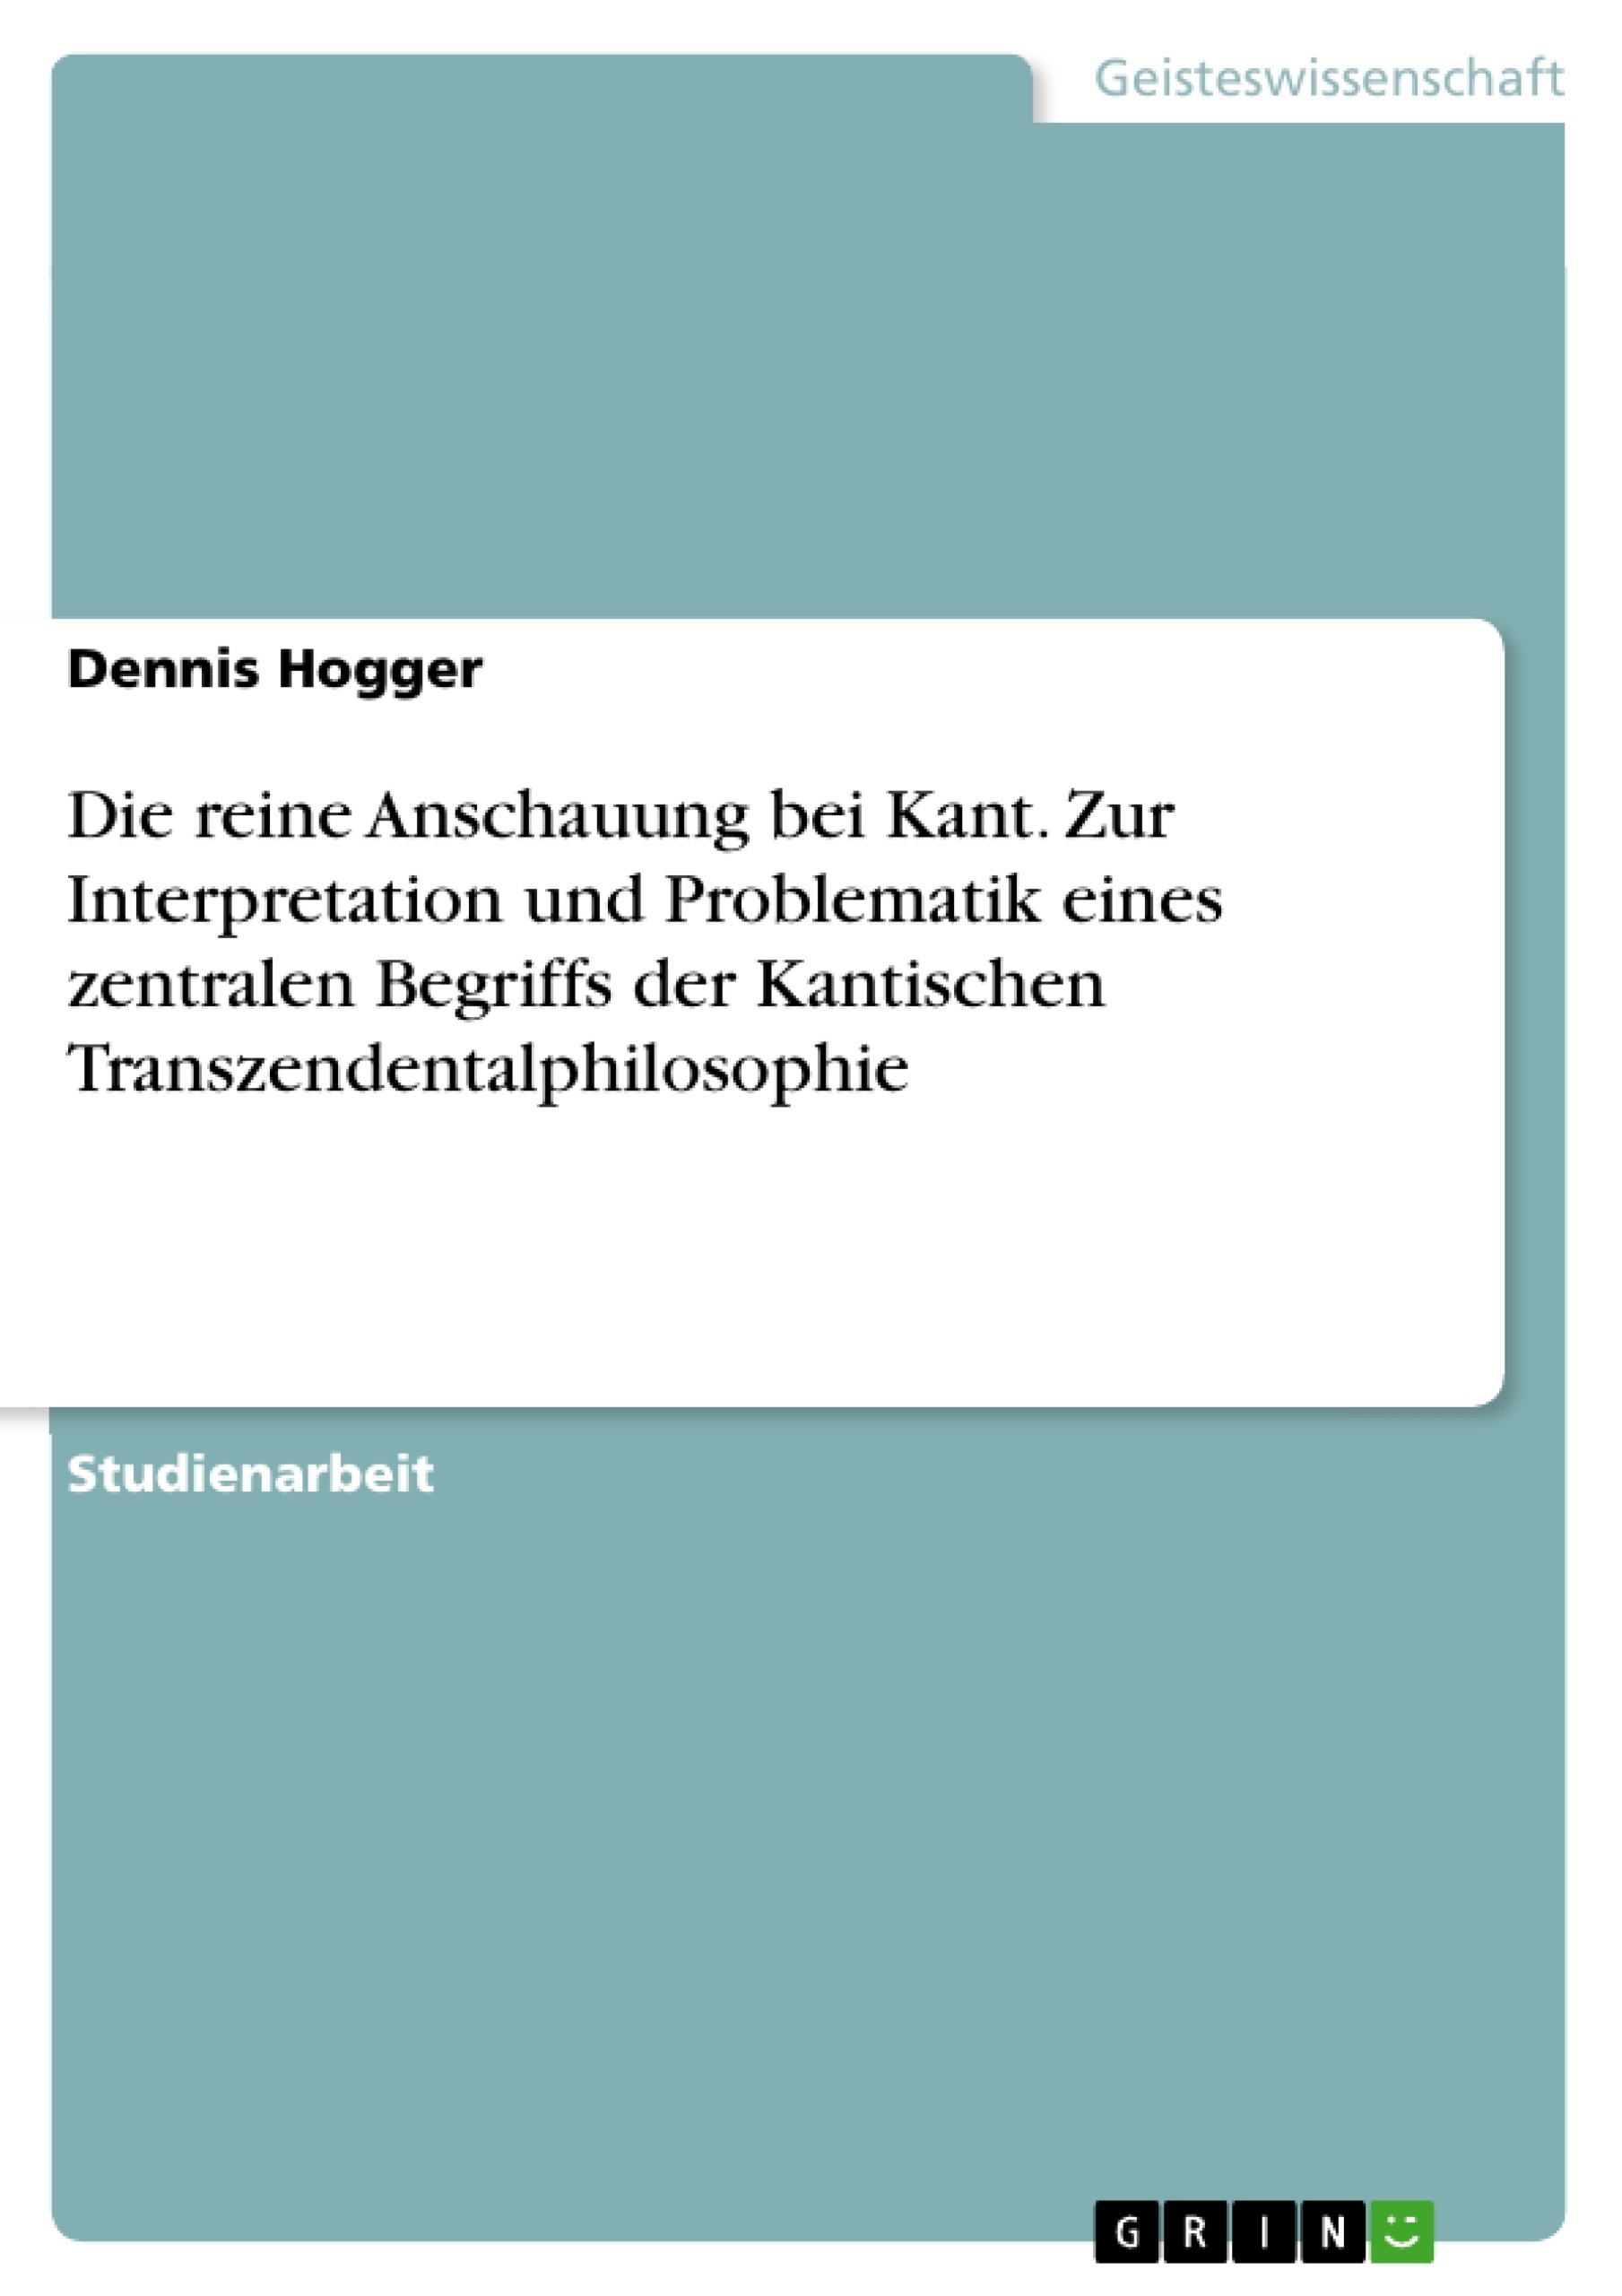 Título: Die reine Anschauung bei Kant. Zur Interpretation und Problematik eines zentralen Begriffs der Kantischen Transzendentalphilosophie